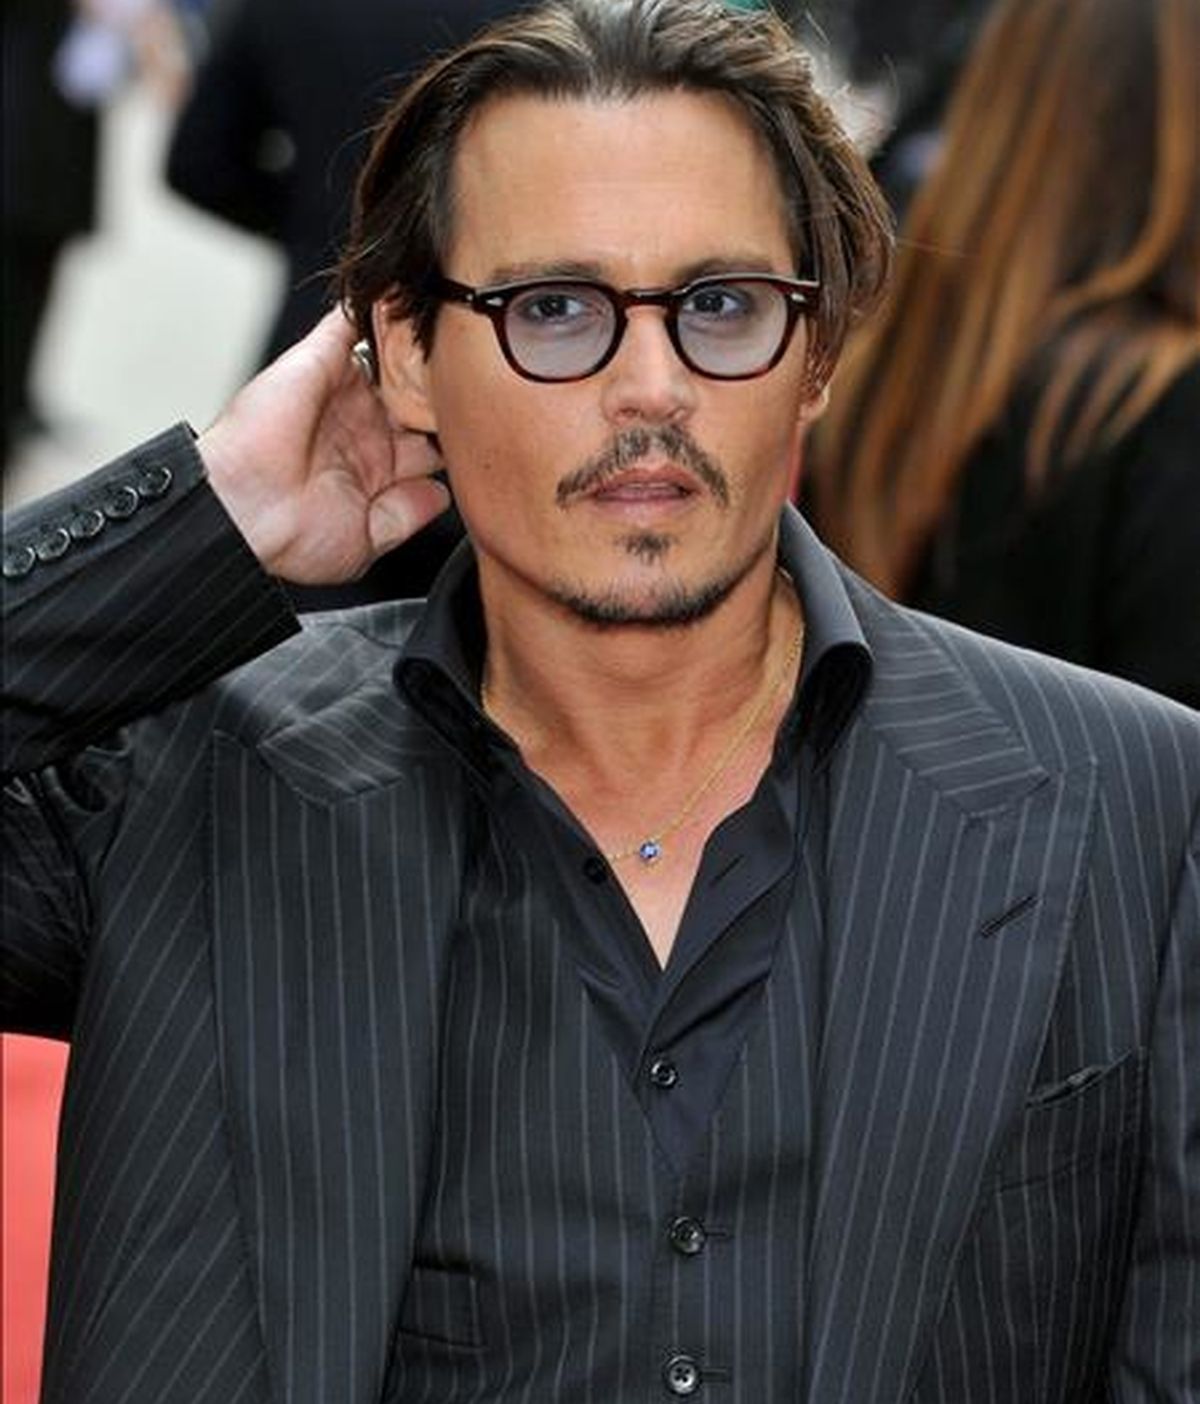 El actor estadounidense Johnny Depp posa al llegar al estreno de "Public Enemies" (Enemigos Públicos), del director estadounidense Michael Mann, ayer  lunes 29 de junio en el Empire Leicester Square de Londres, Reino Unido. EFE